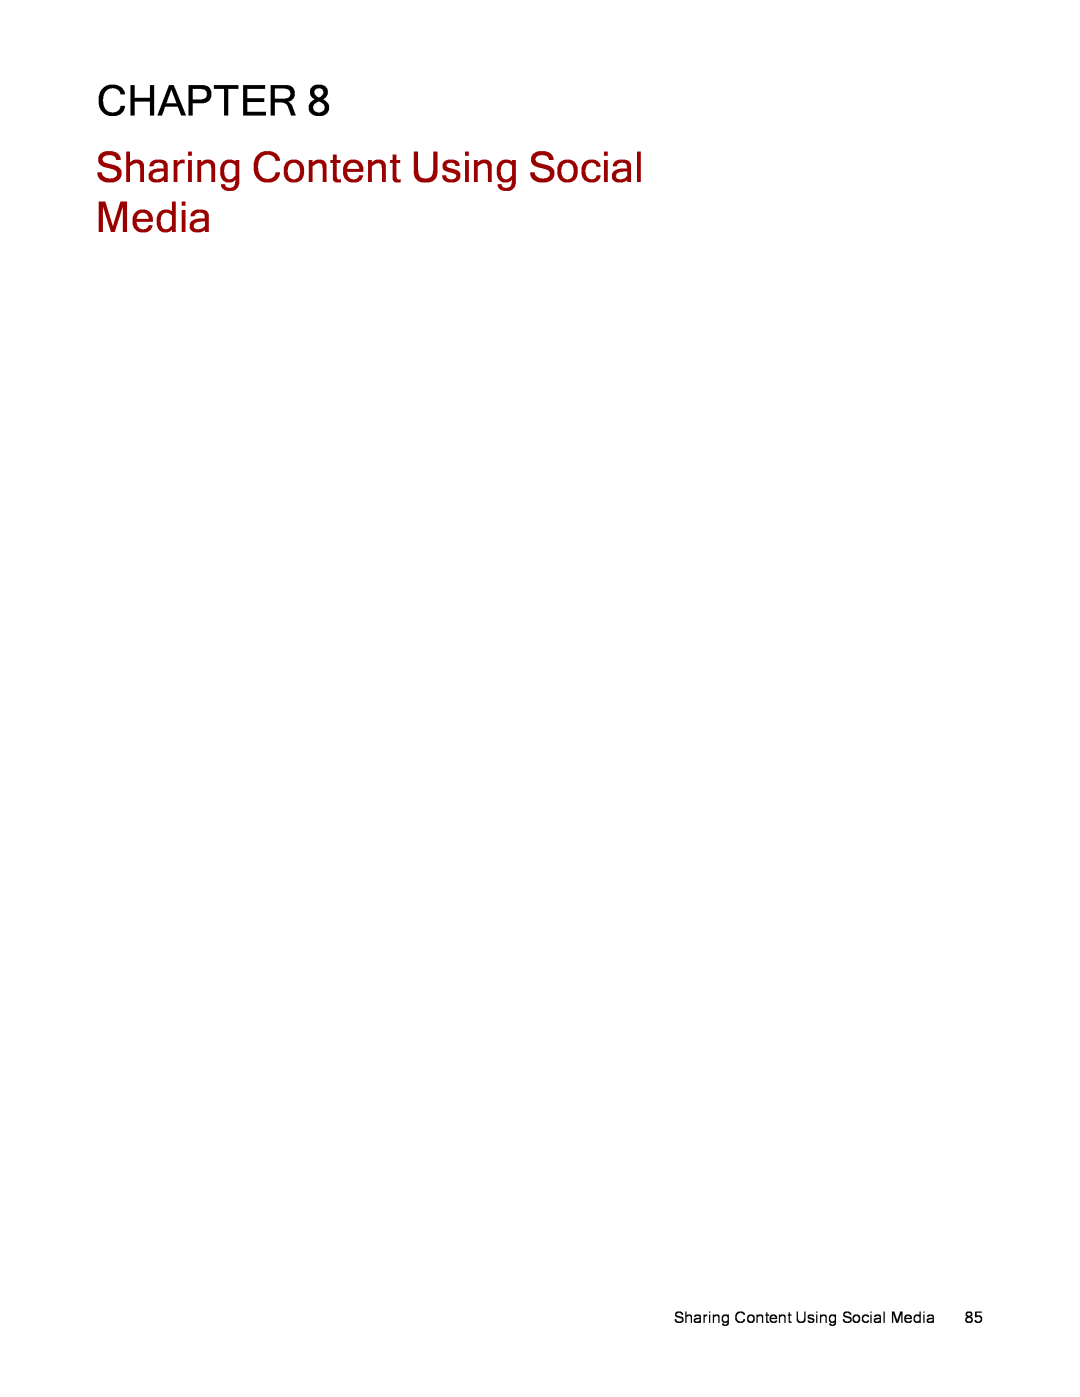 Lenovo 70B89000NA, 70B89003NA, 70B89001NA manual Sharing Content Using Social Media, Chapter 